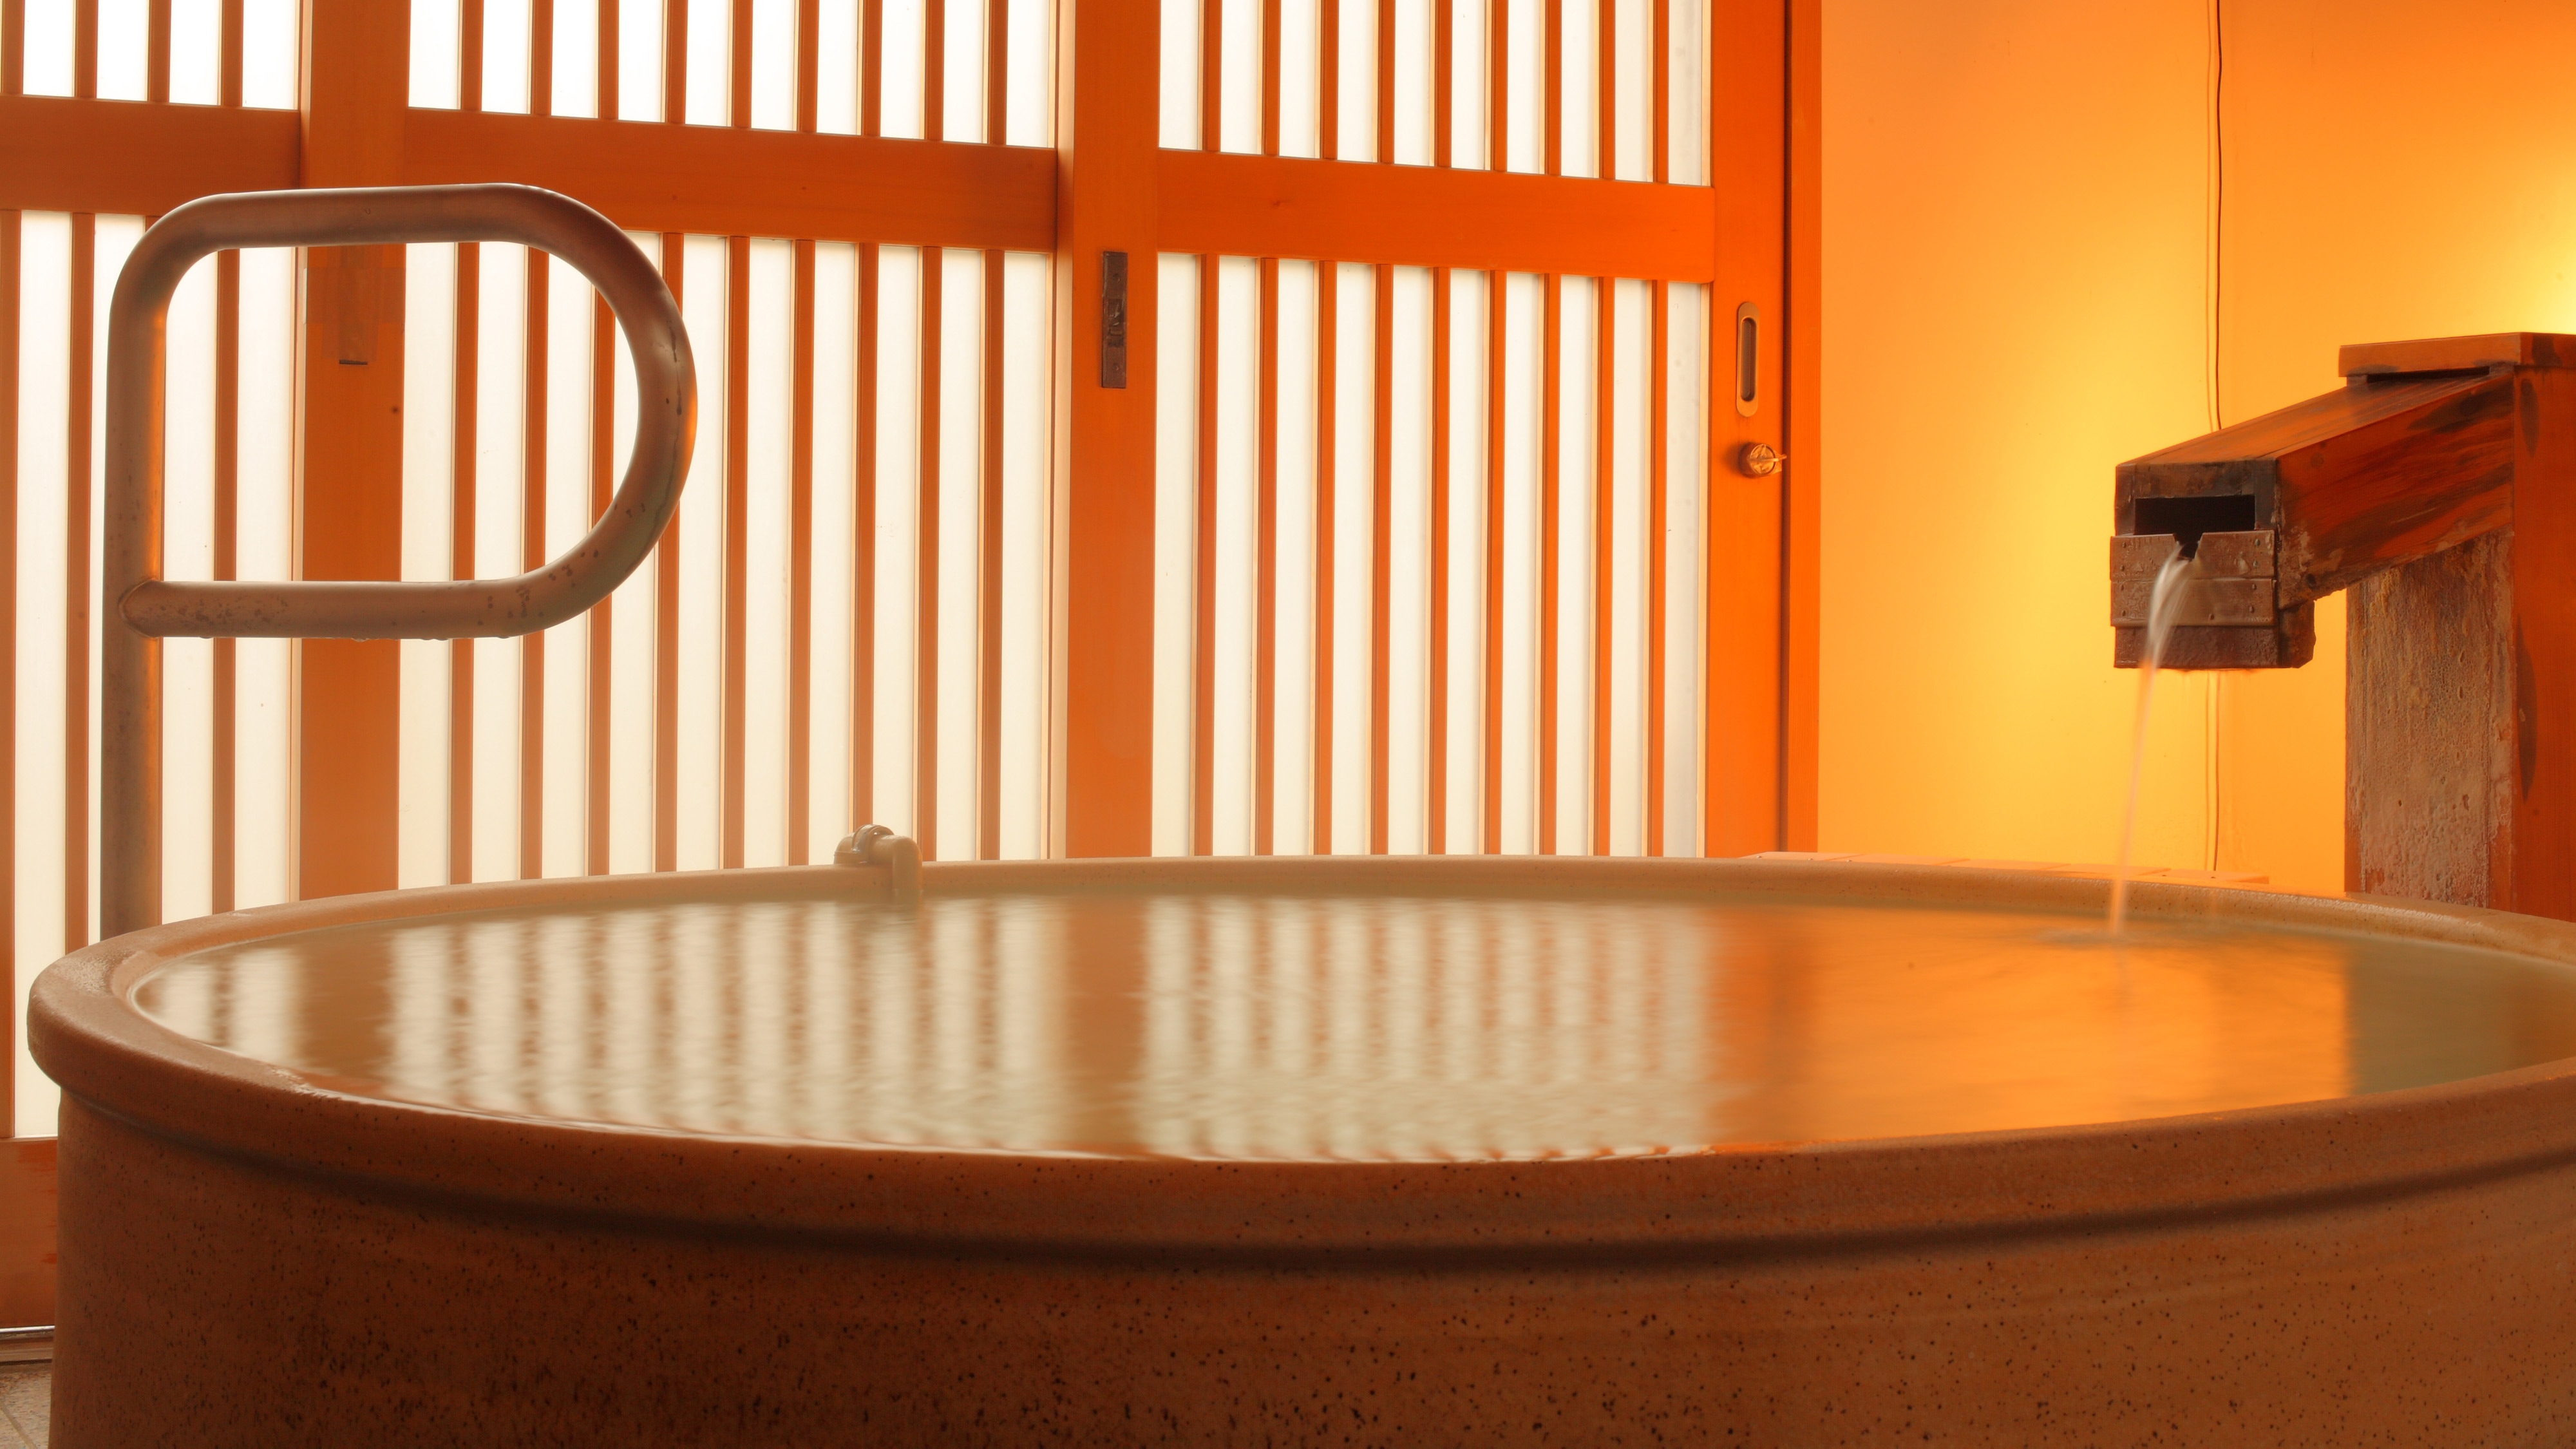 Large public bath "Kin no Yu" Shigaraki pottery bath